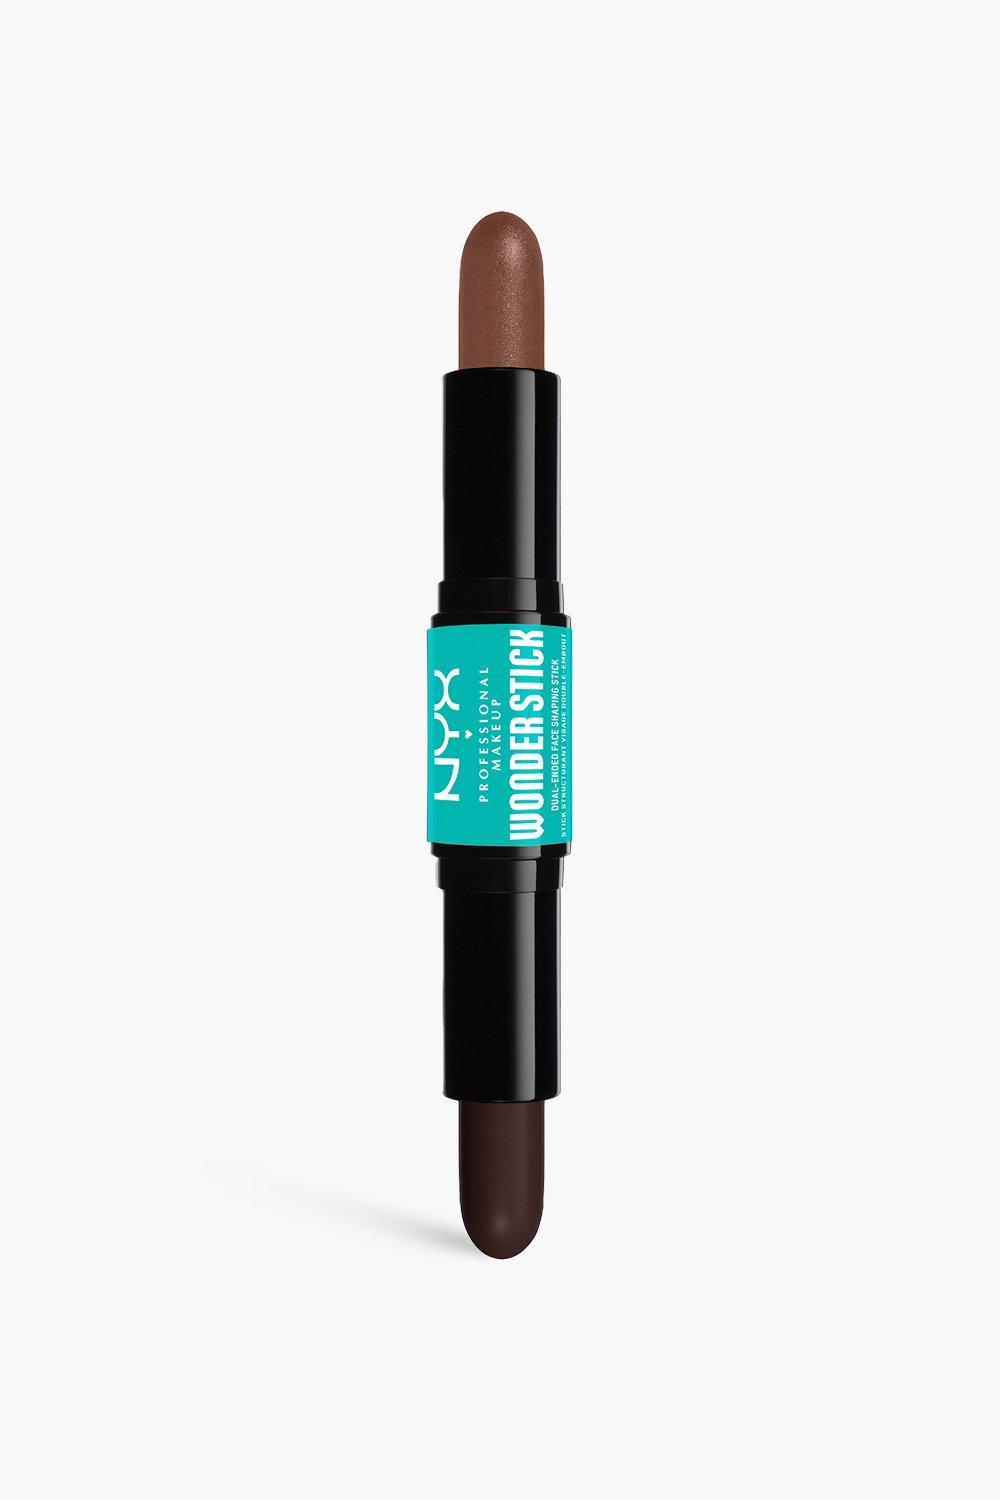 Nyx Professional Makeup Wonder Stick Highlight & Contour Stick, Deep Rich